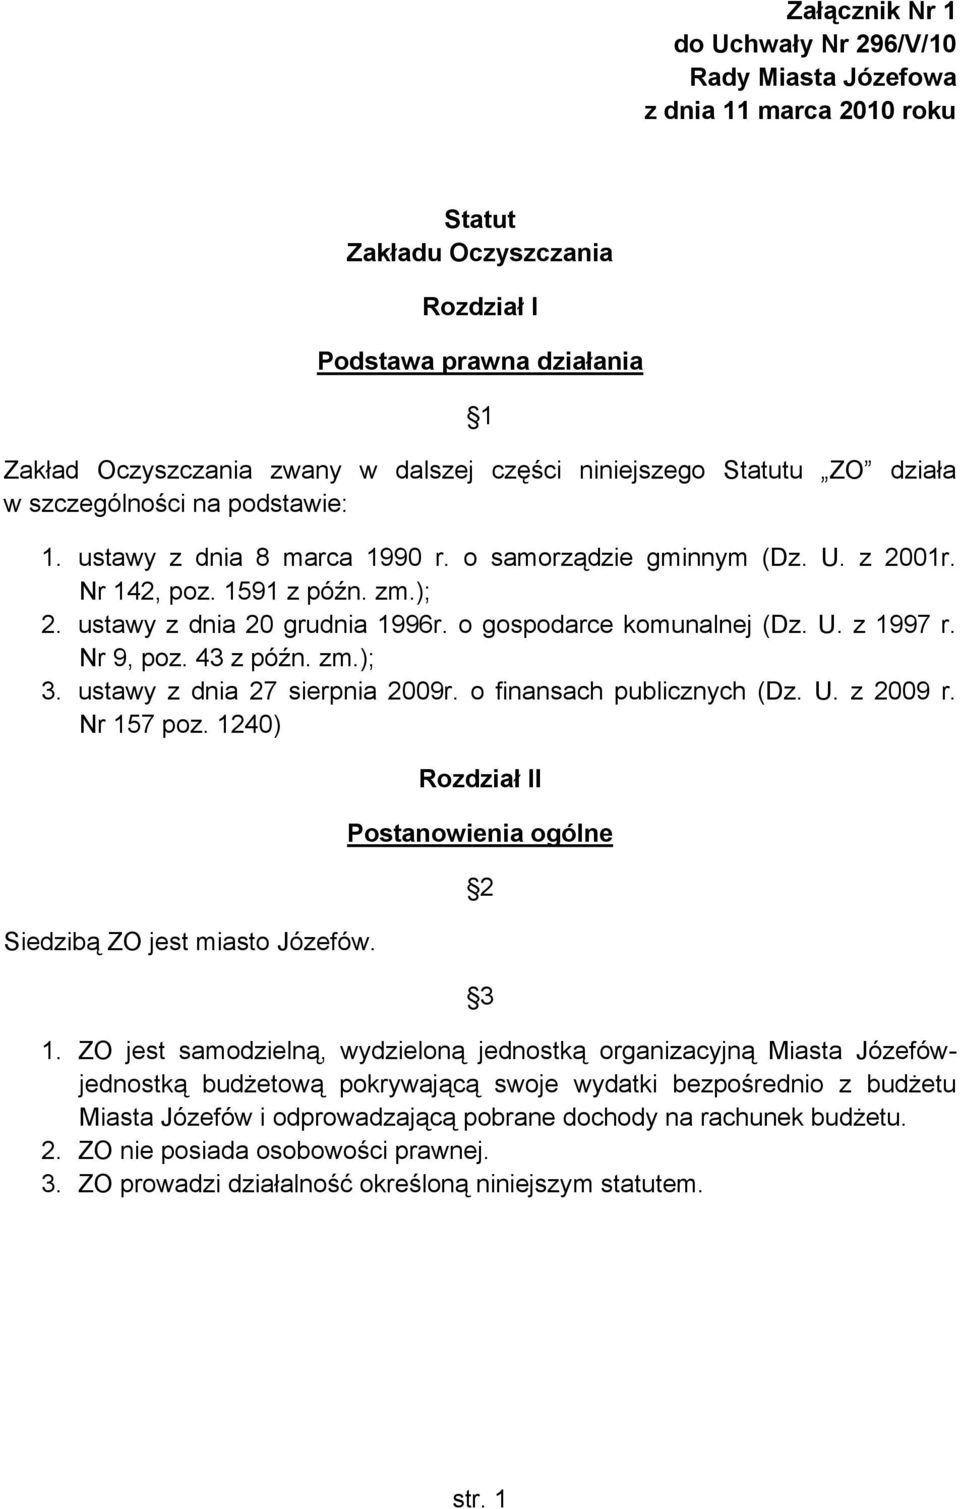 o gospodarce komunalnej (Dz. U. z 1997 r. Nr 9, poz. 43 z późn. zm.); 3. ustawy z dnia 27 sierpnia 2009r. o finansach publicznych (Dz. U. z 2009 r. Nr 157 poz. 1240) Siedzibą ZO jest miasto Józefów.